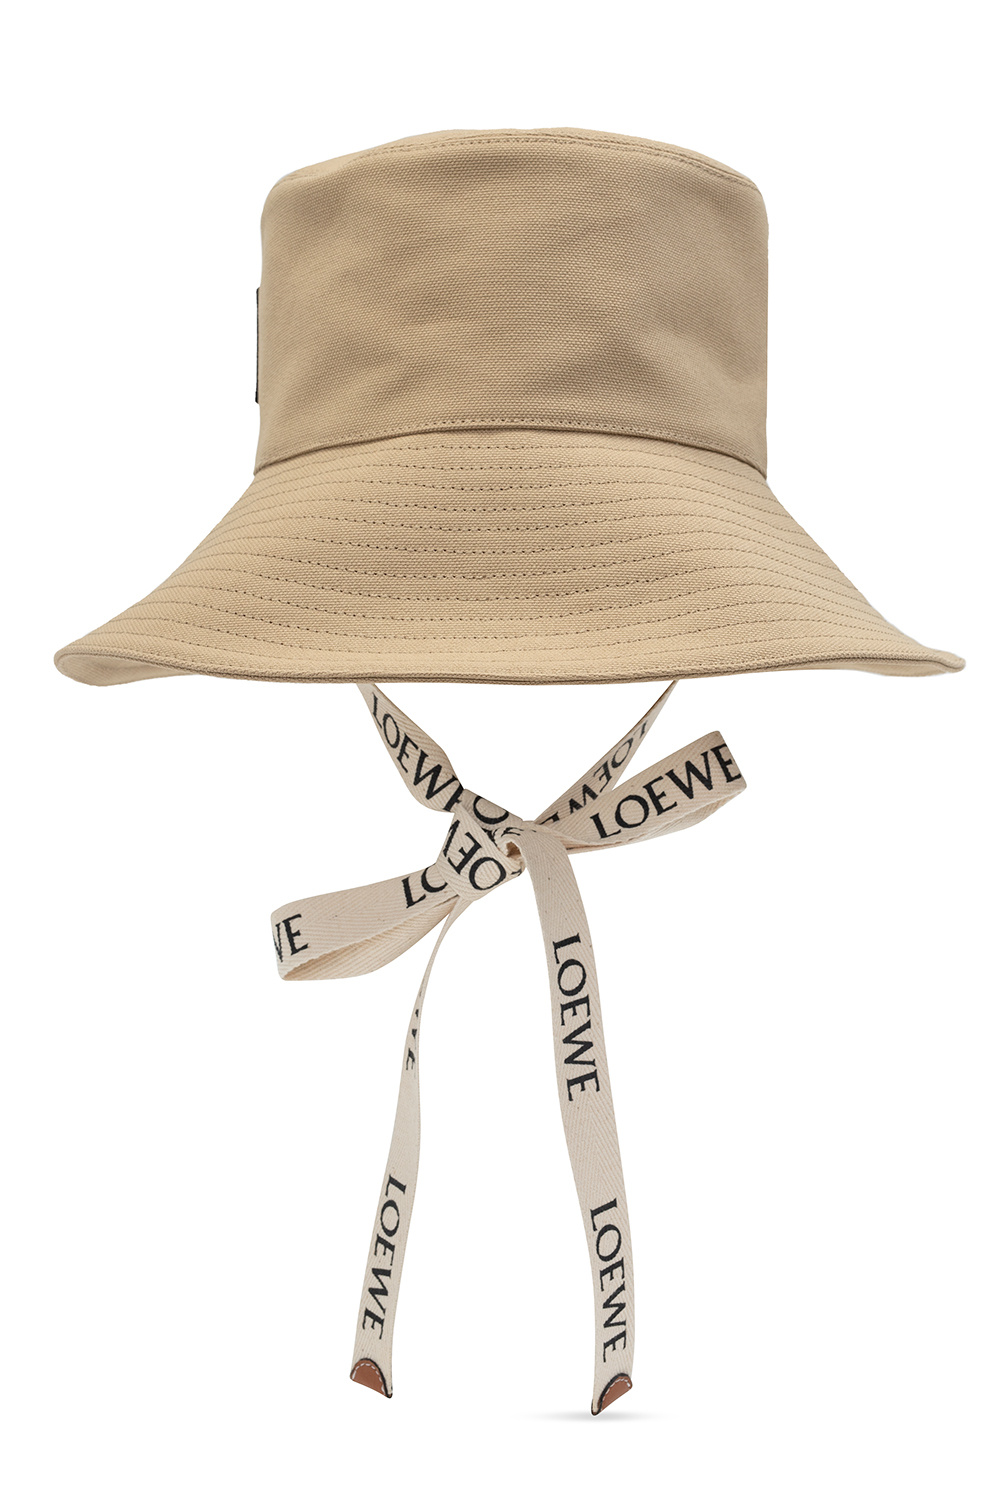 LOEWE】Paula's Ibiza Panama Hat